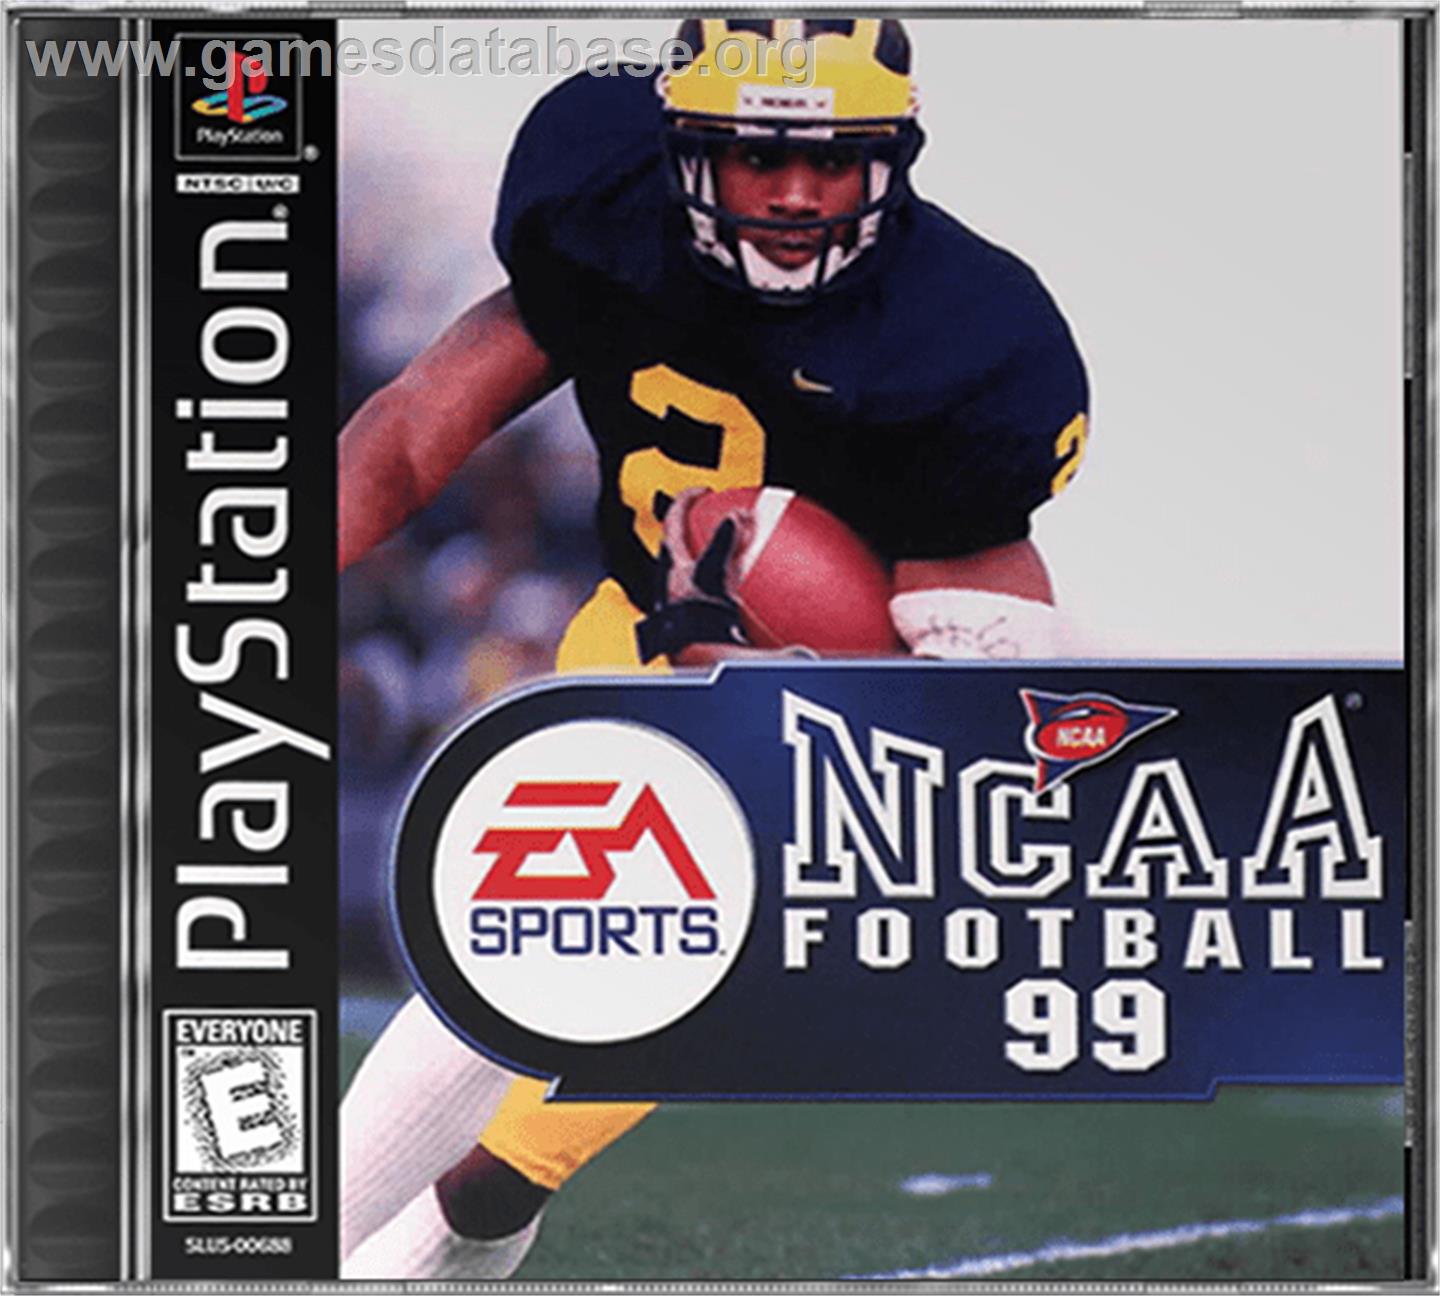 NCAA Football 99 - Sony Playstation - Artwork - Box